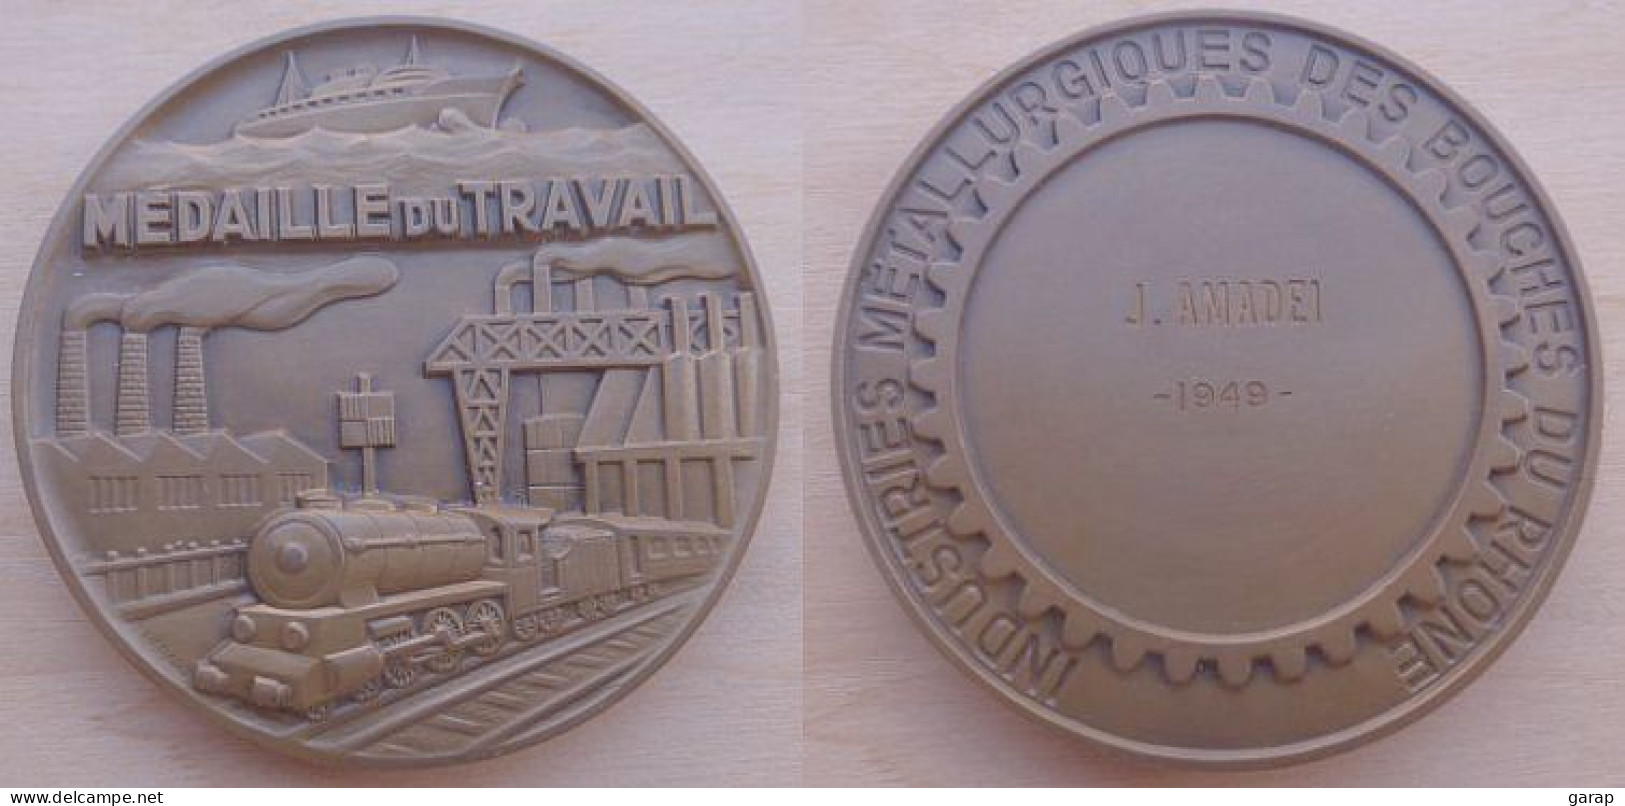 DA-018 Médaille Bronze,signée Bérard Industries Métallurgiques Des Bouches Du Rhône 1949 - Autres Appareils